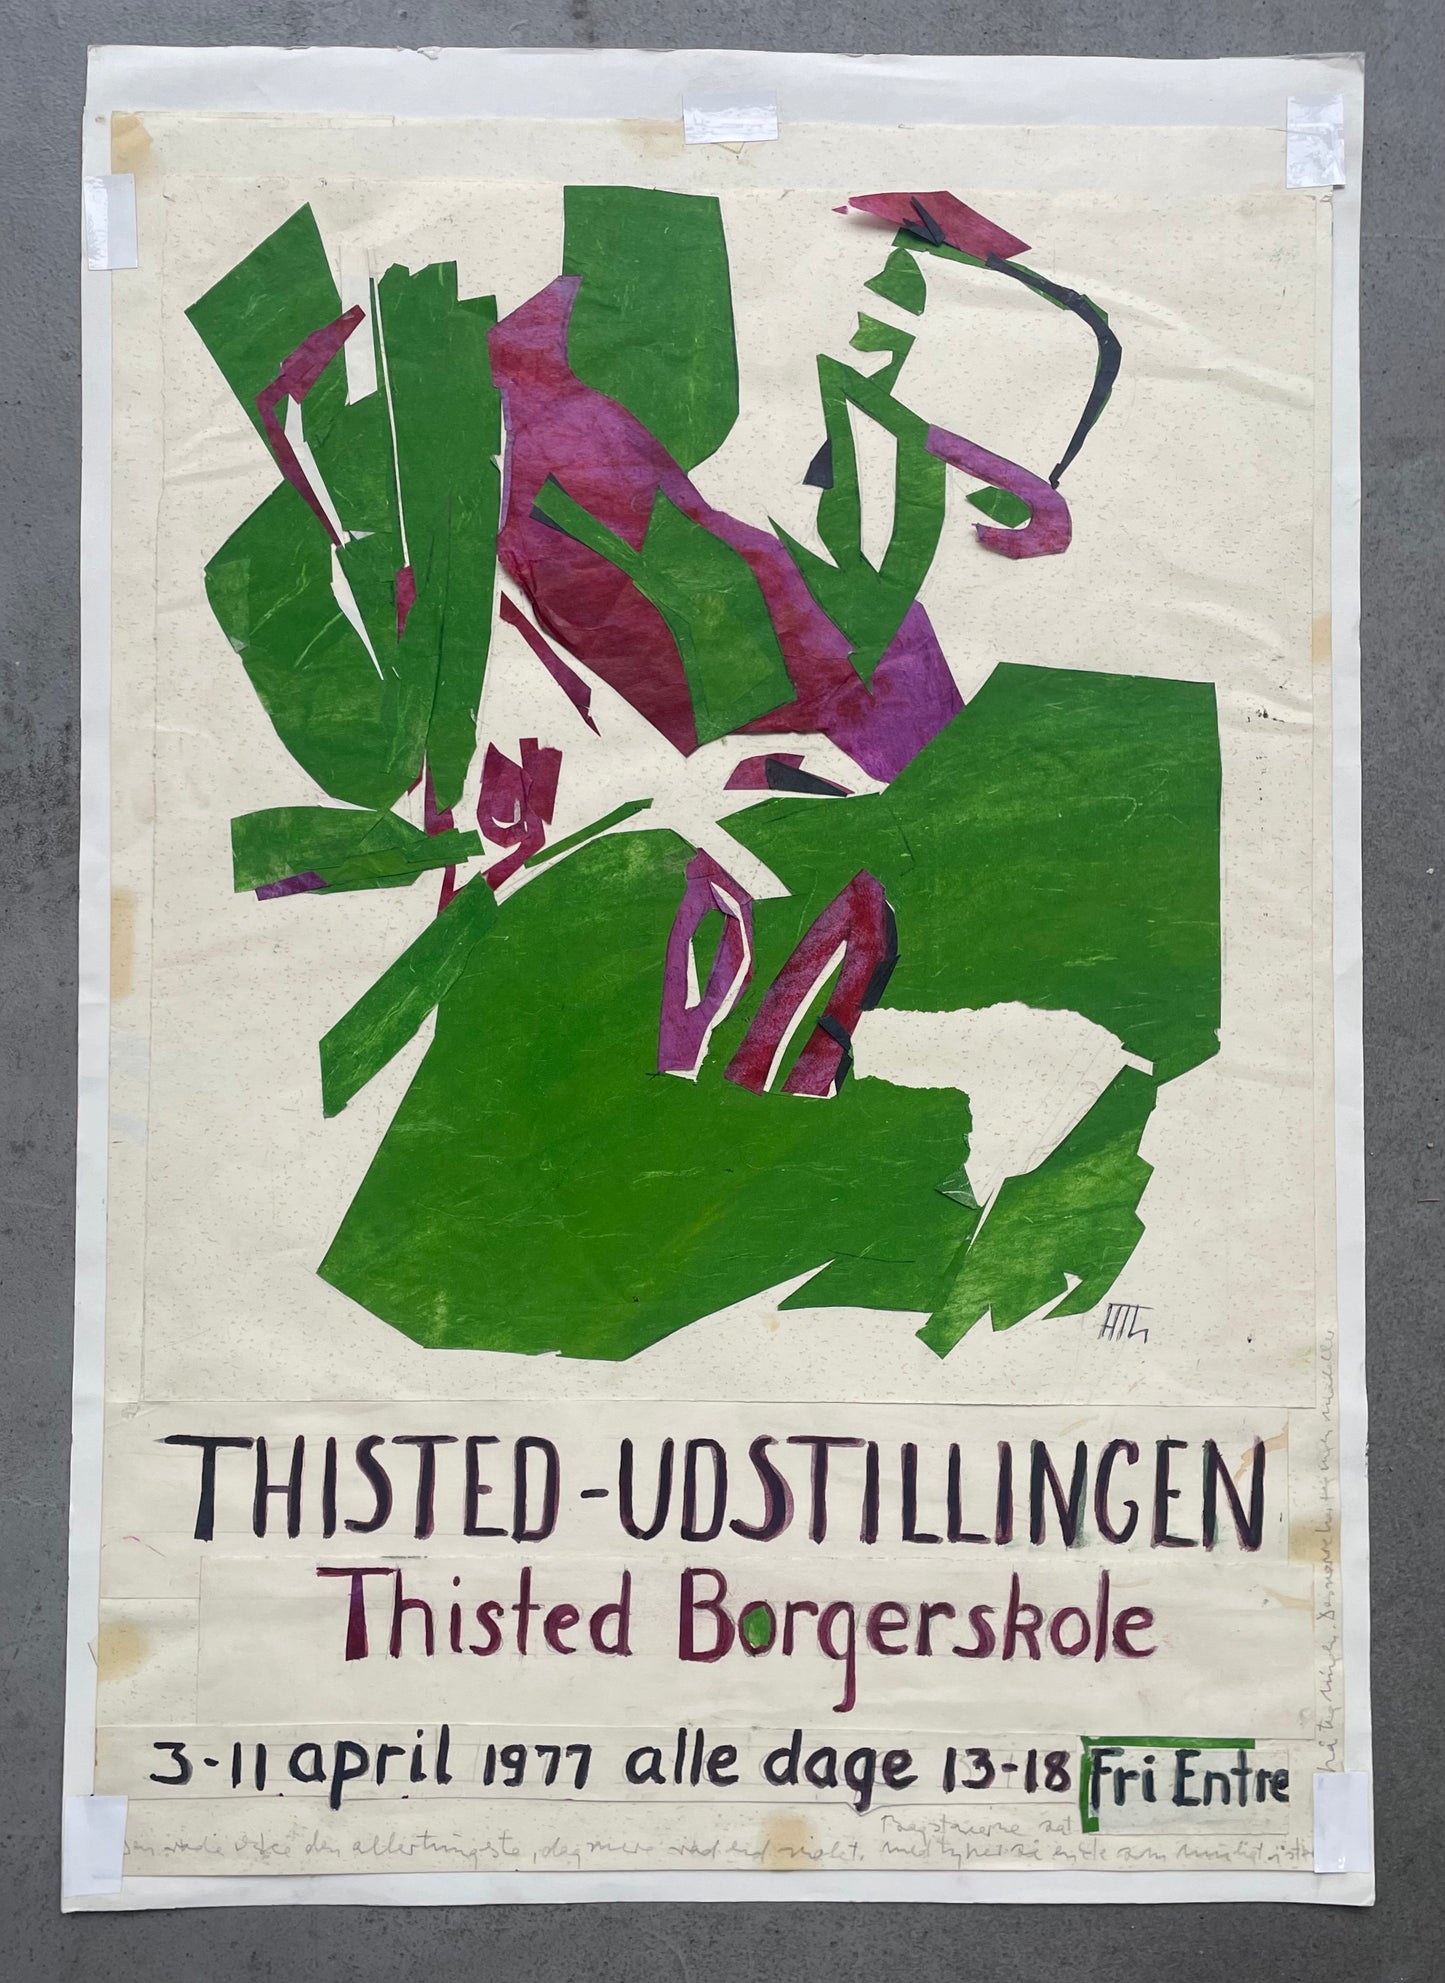 Helle Thorborg, "Thisted-Udstillingen", 1977